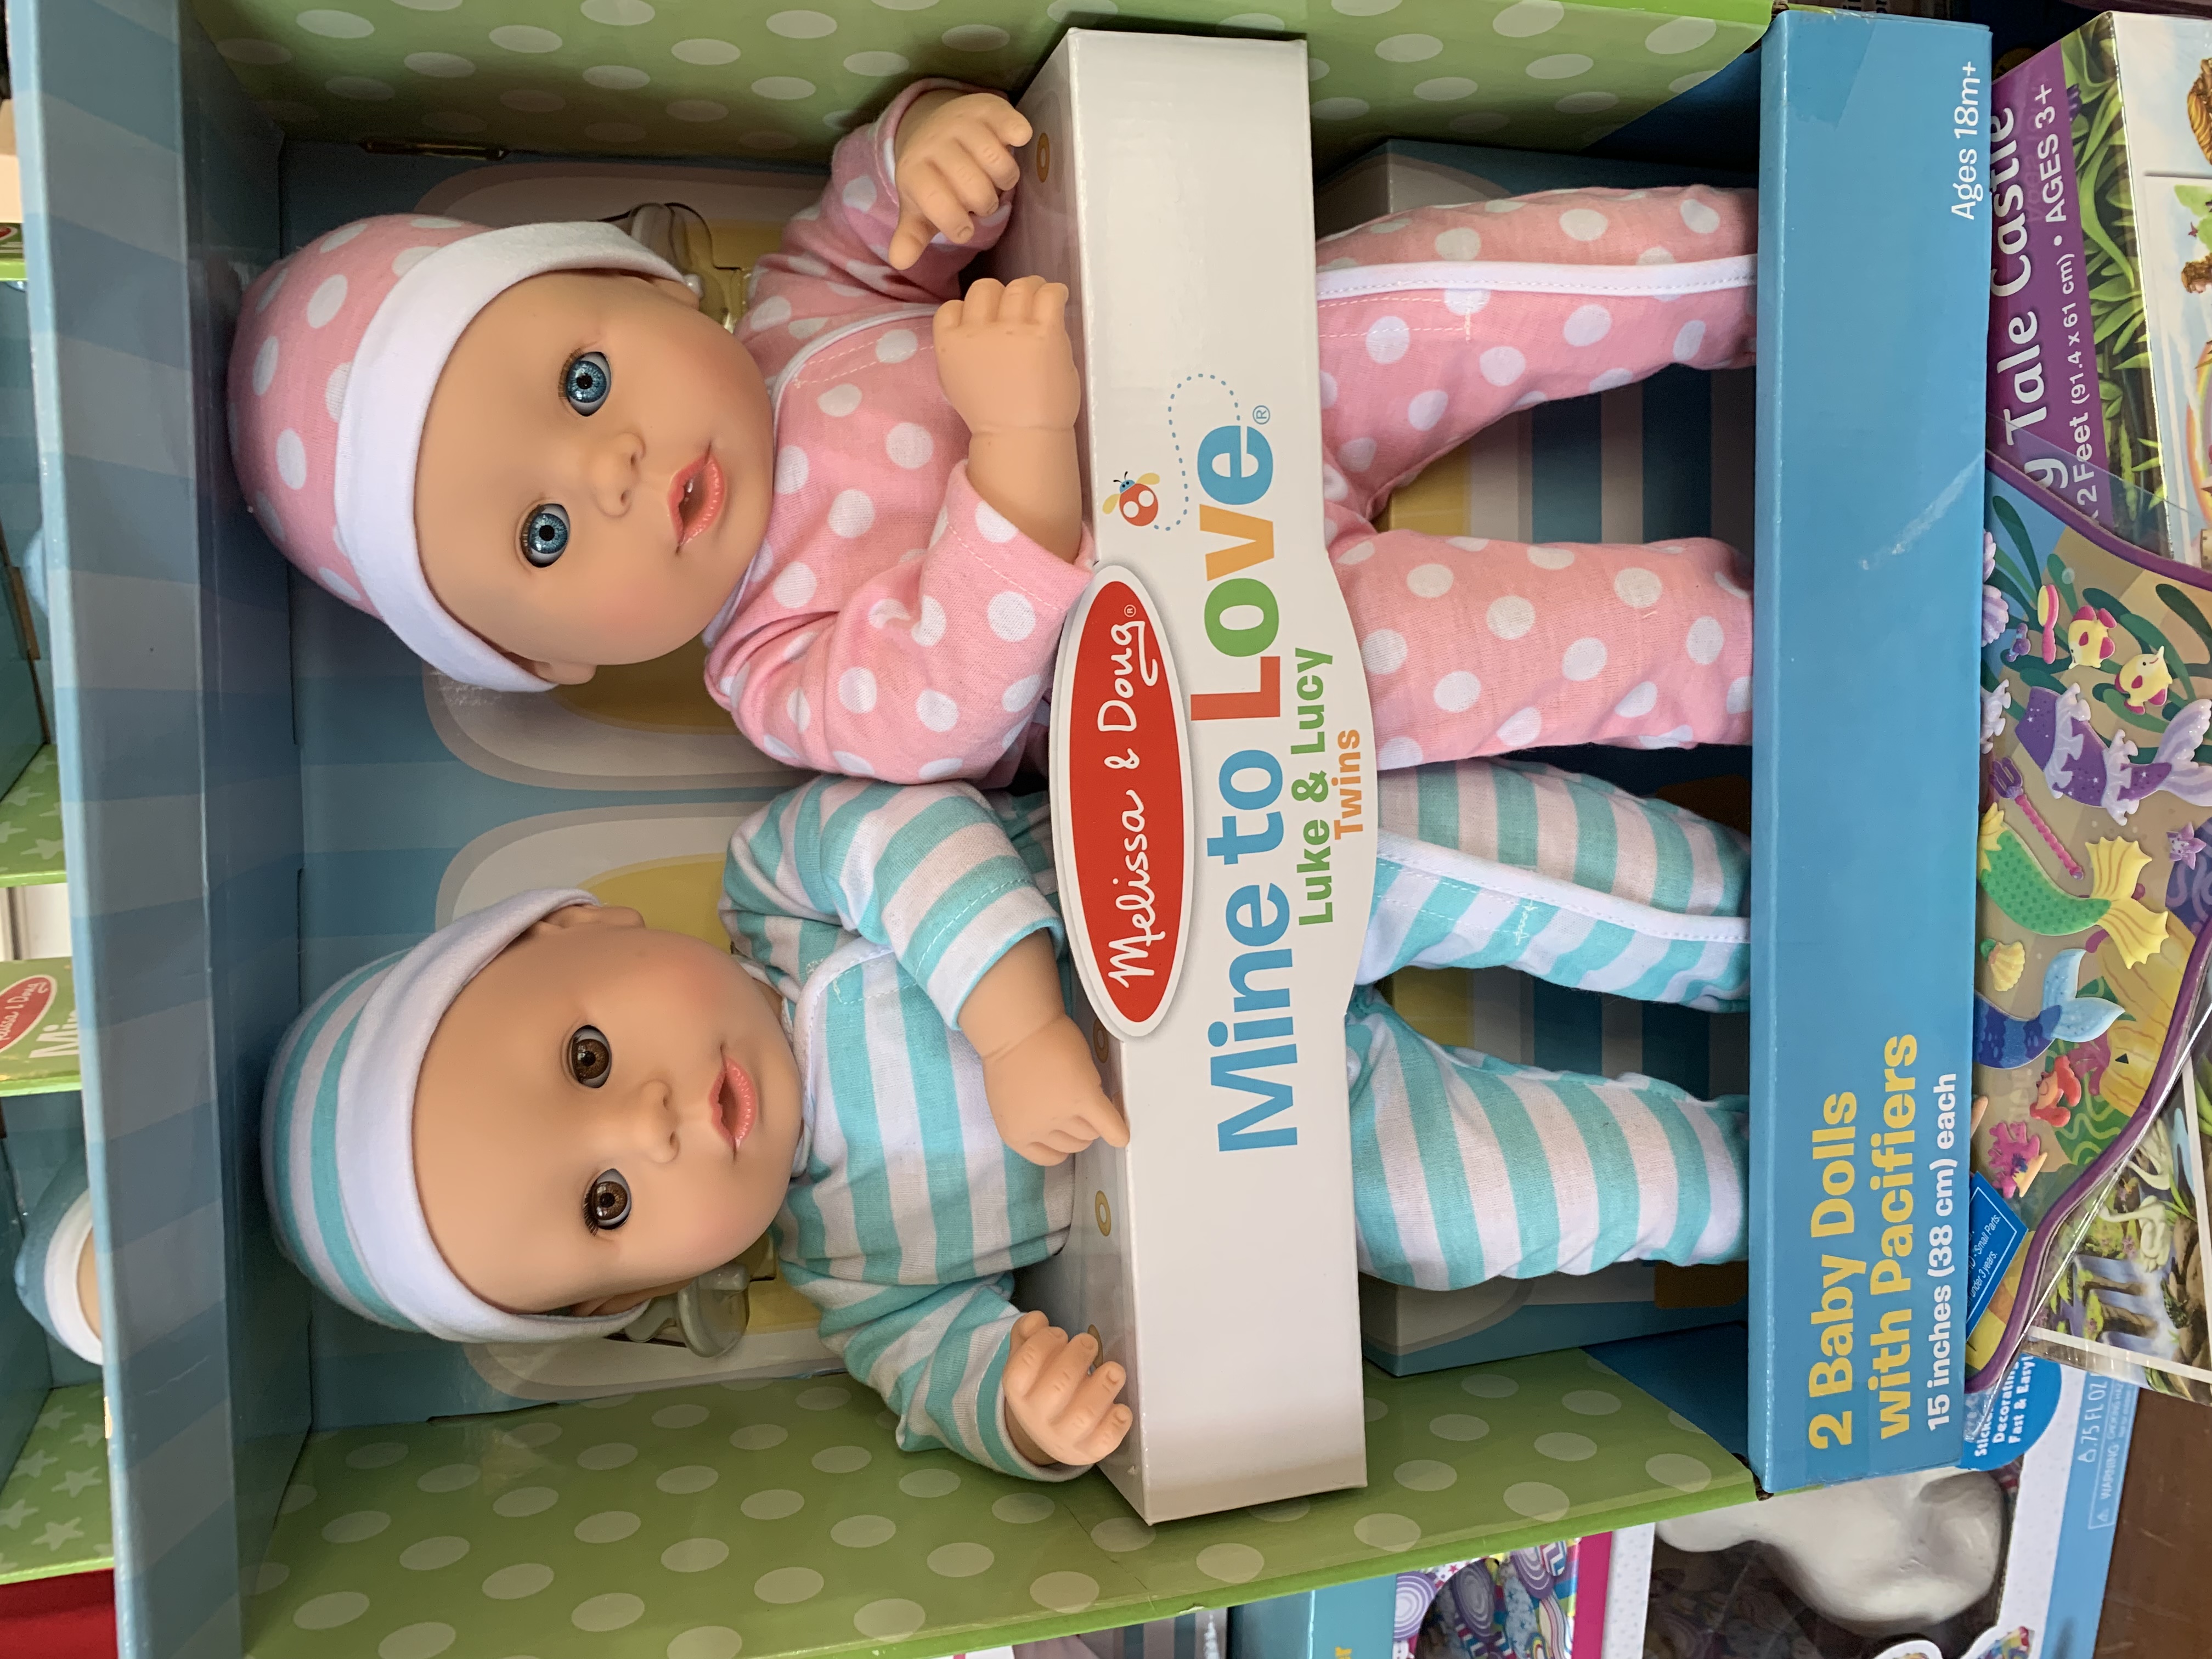 melissa and doug twin dolls